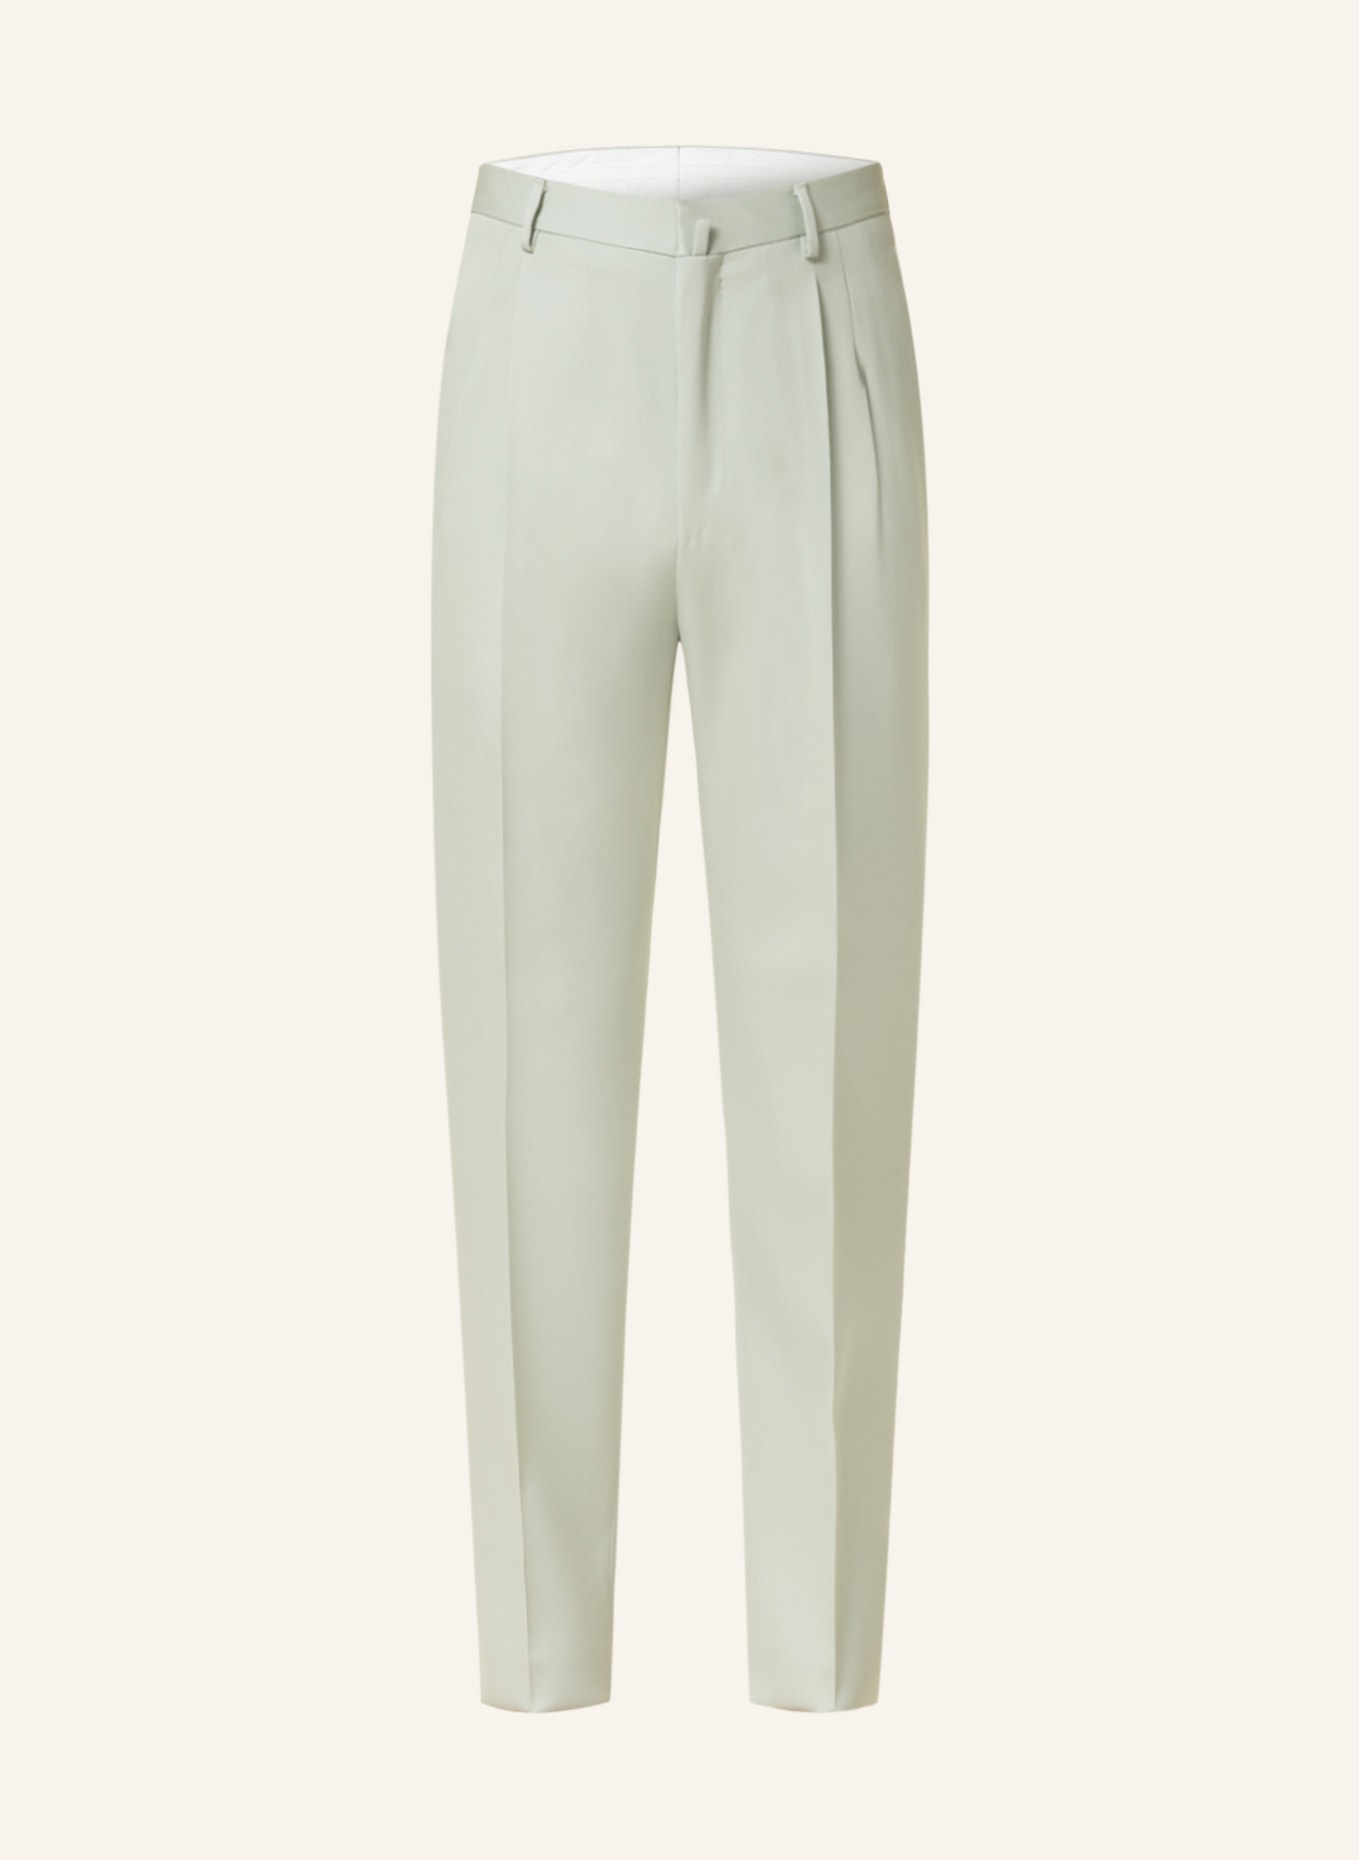 LANVIN Suit trousers regular fit, Color: 401 SAGE (Image 1)